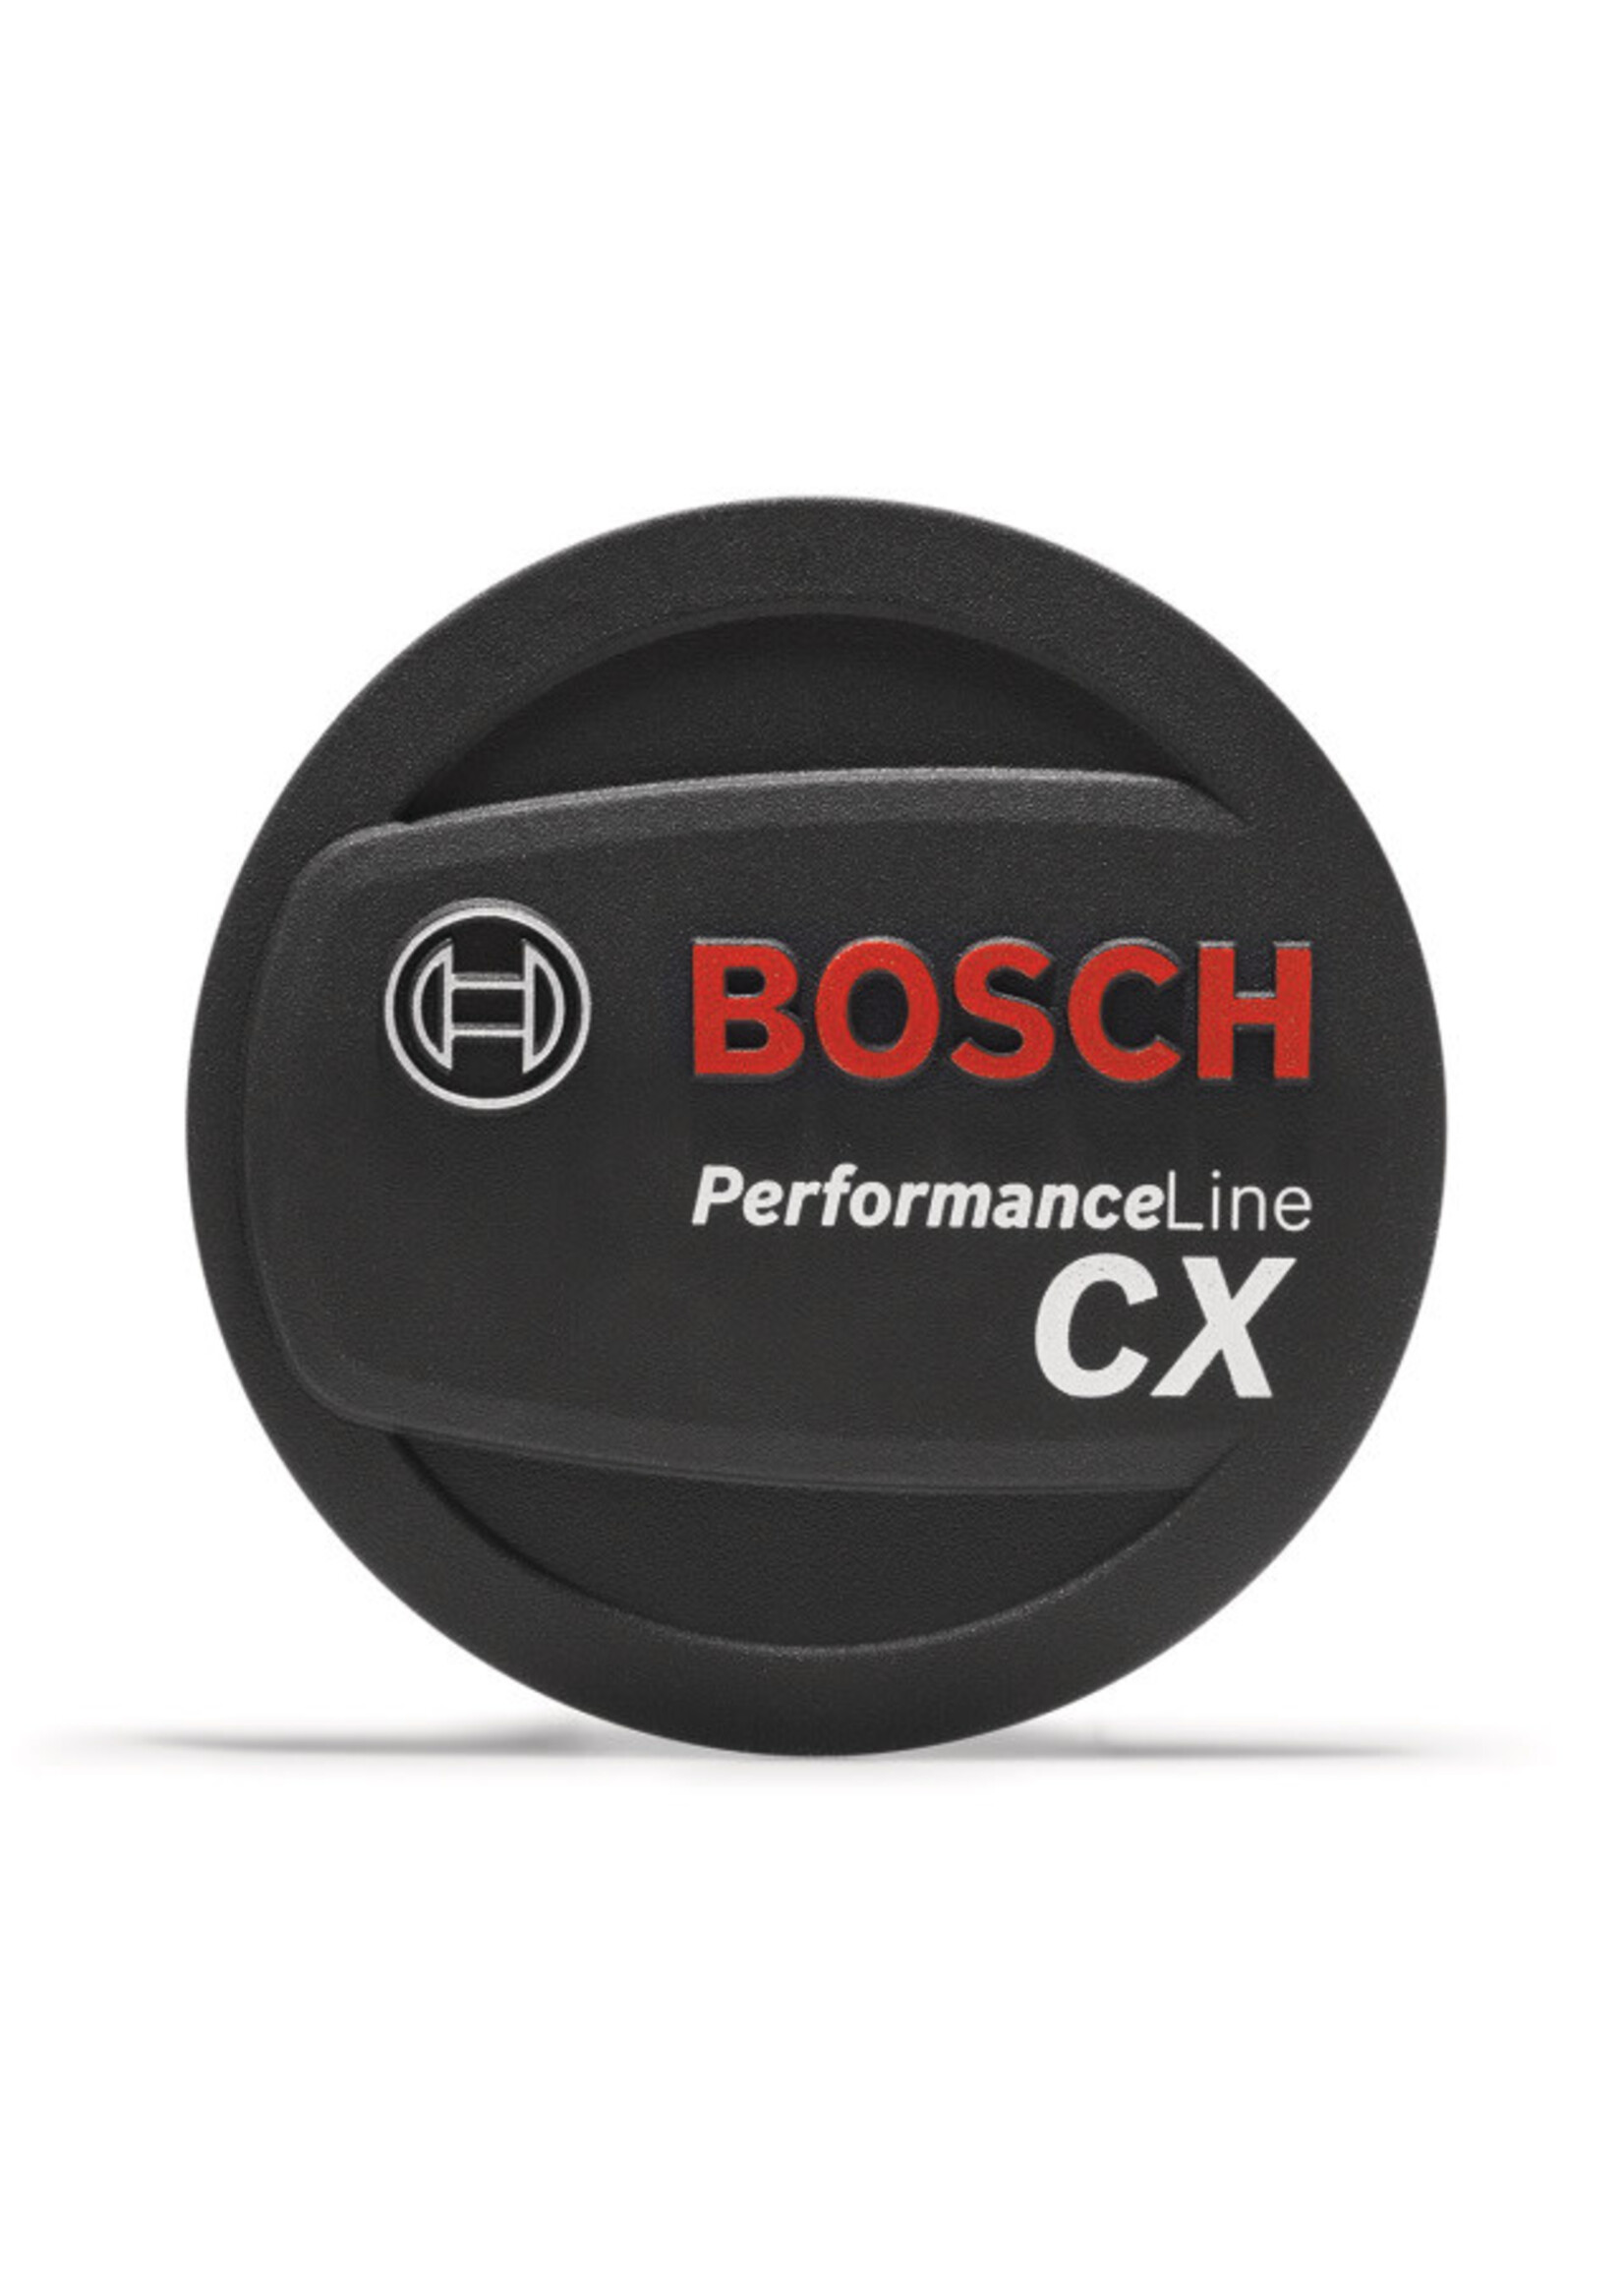 Bosch Bosch - Coperchio BOSCH con logo Performance CX